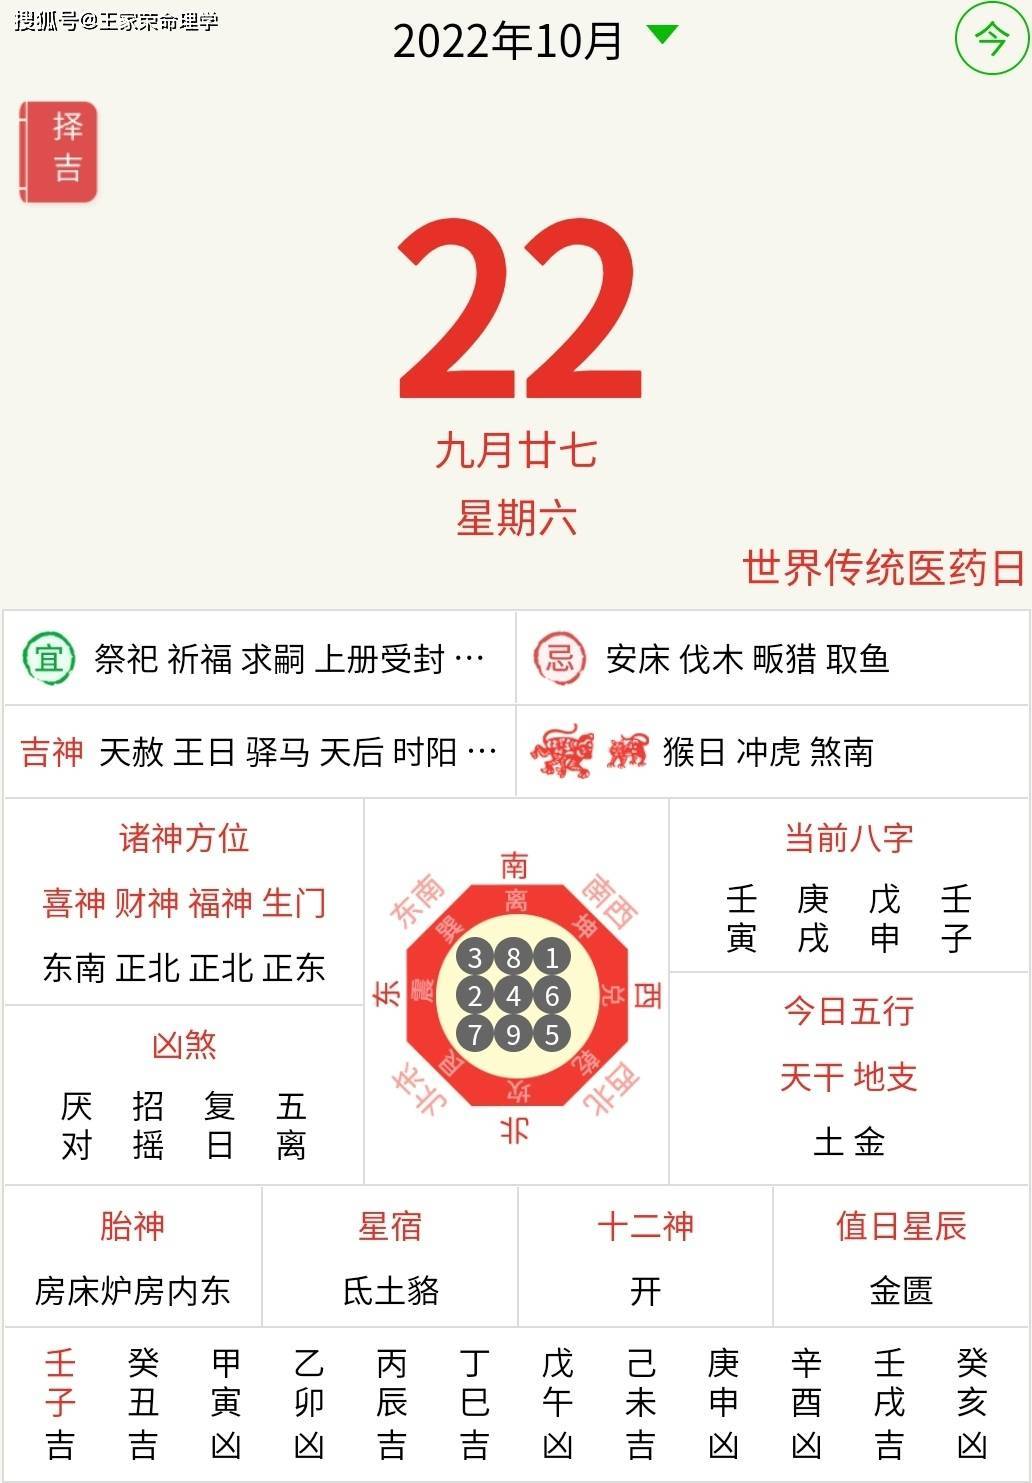 每日黄历运程黄道吉日 生肖运势查询 2022年10月22日